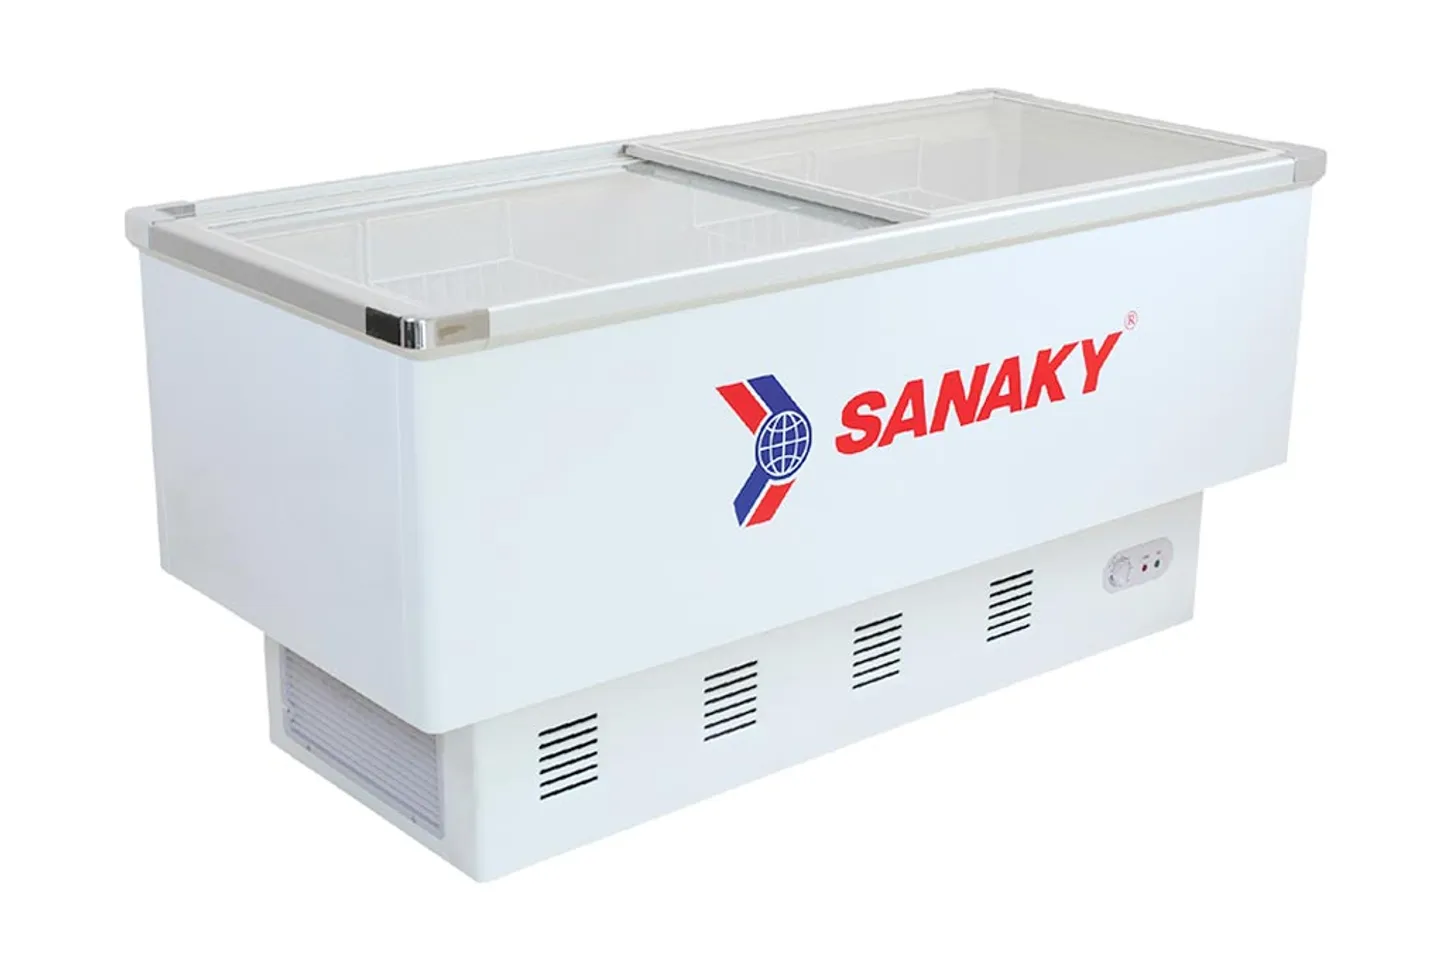 Tủ đông Sanaky VH-999K 516 lít